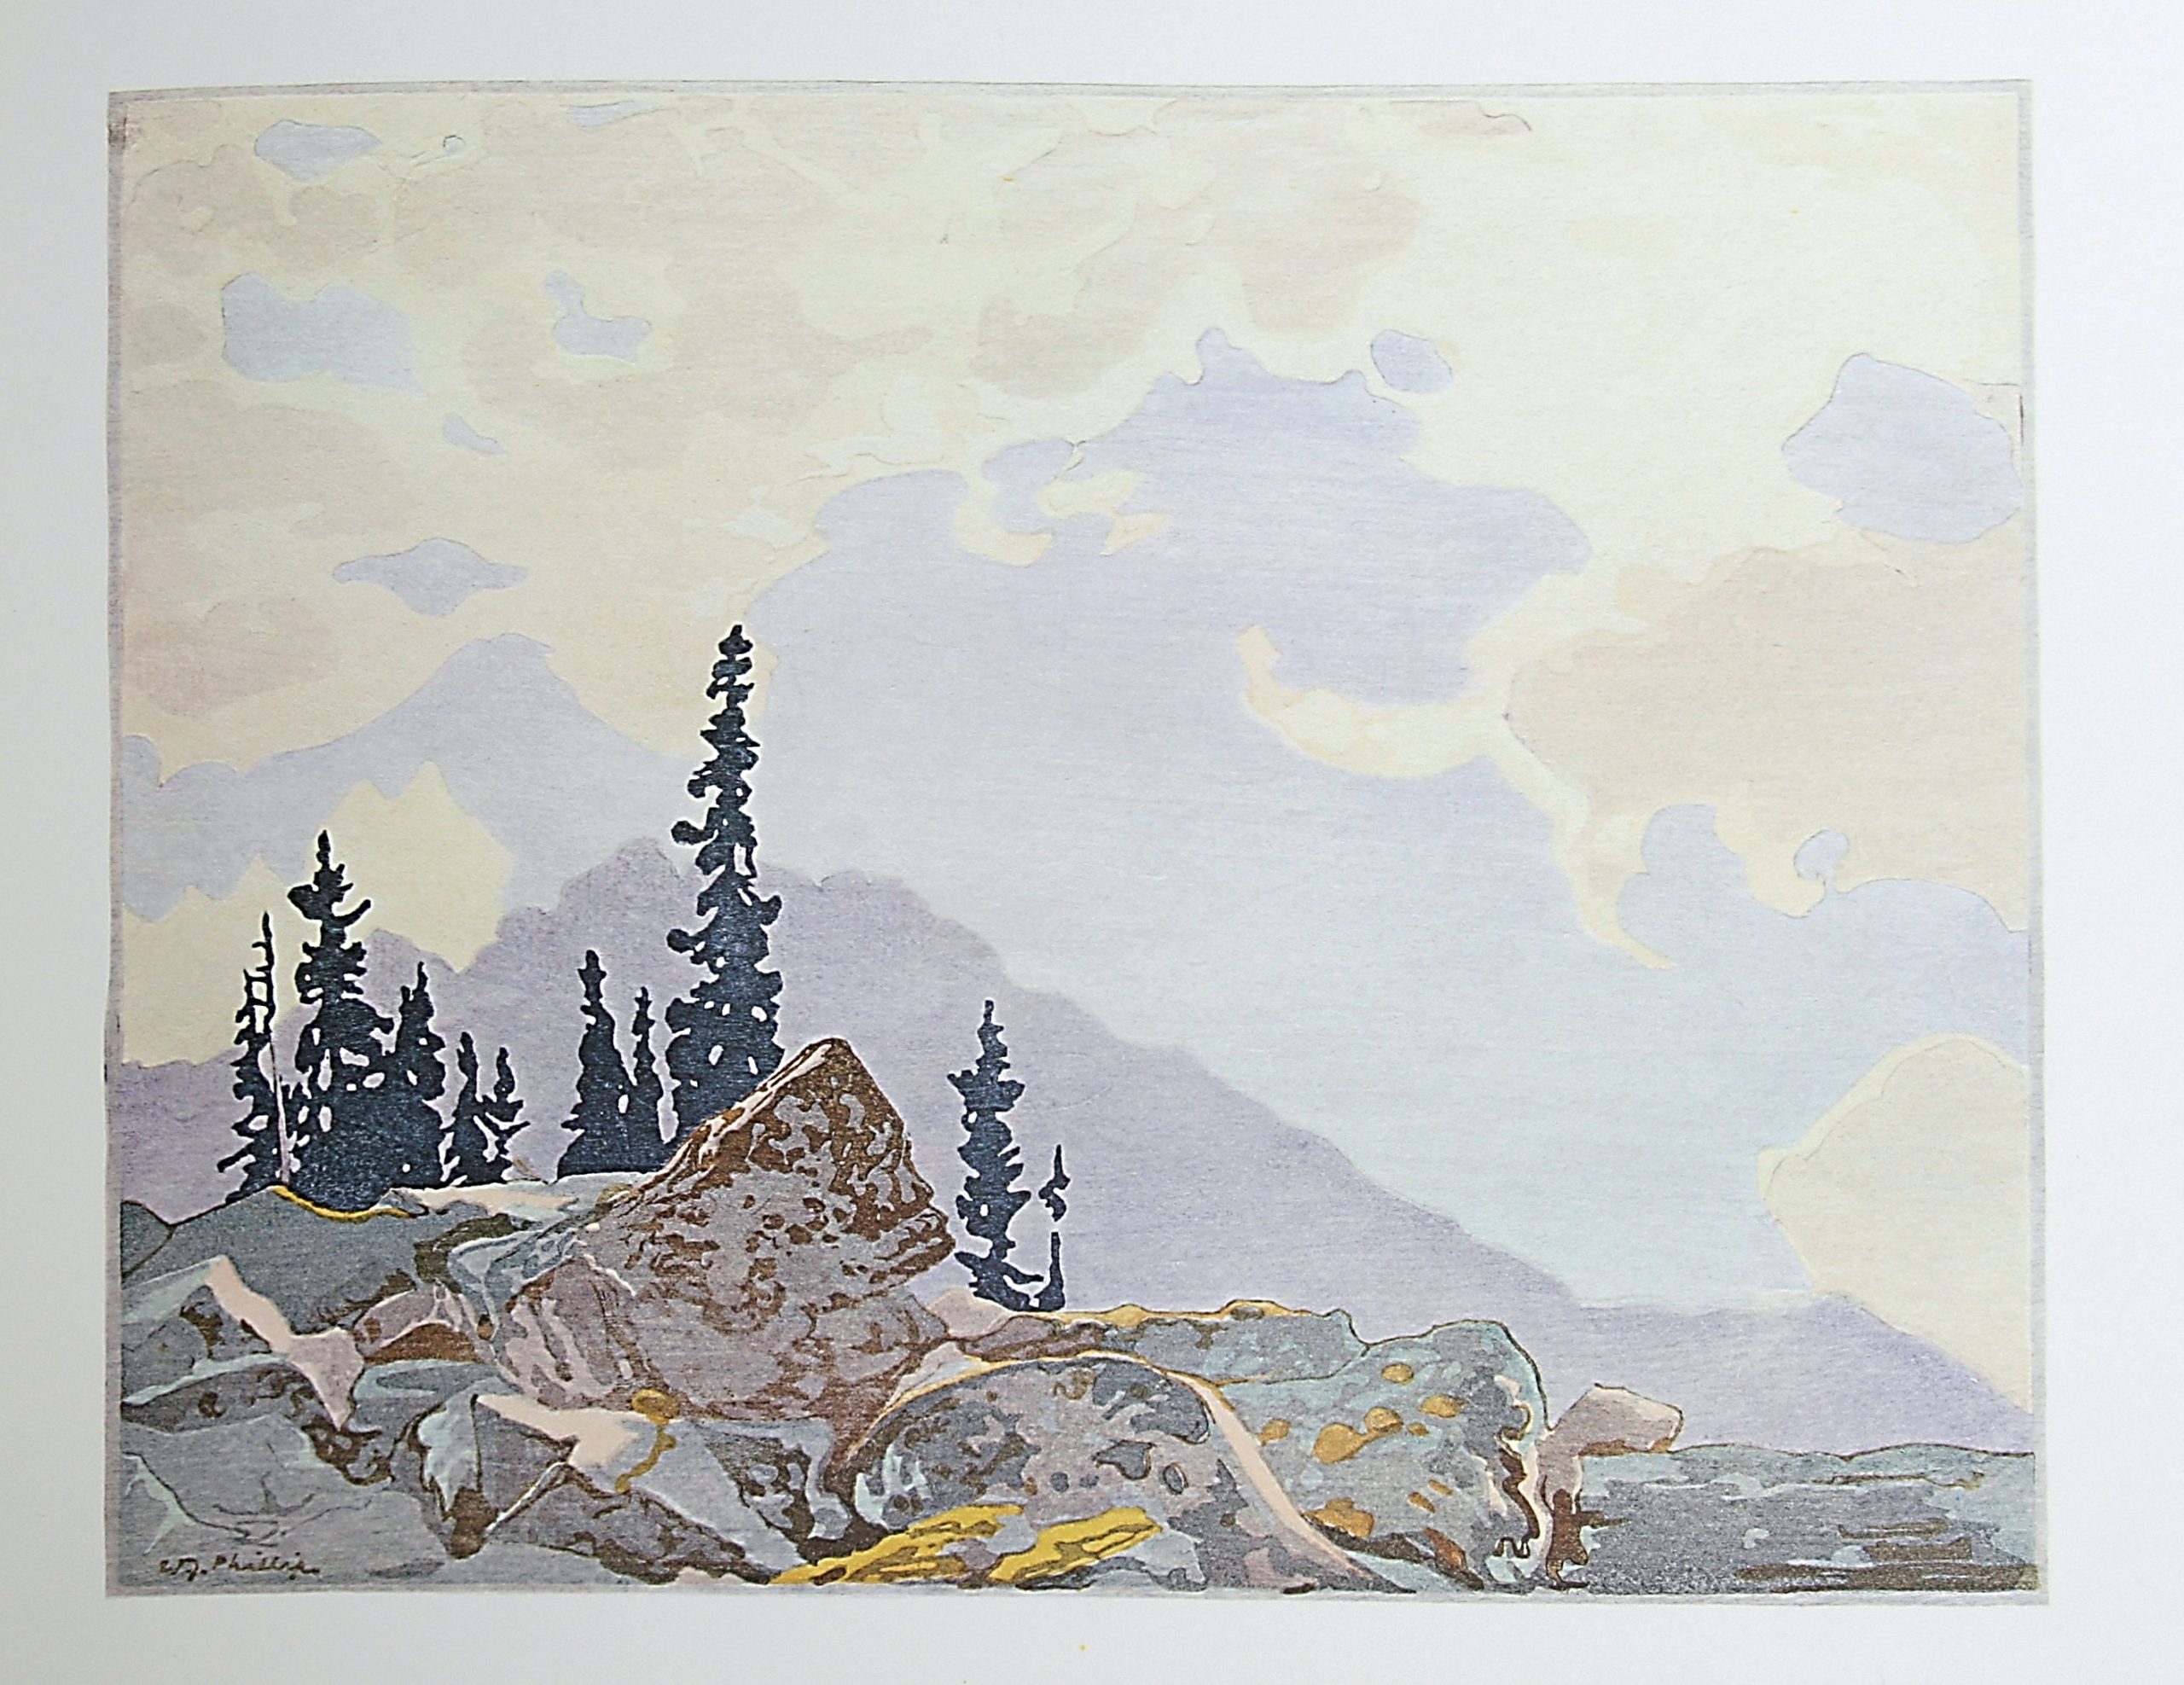 Mount Schaeffer by WJ Phillips